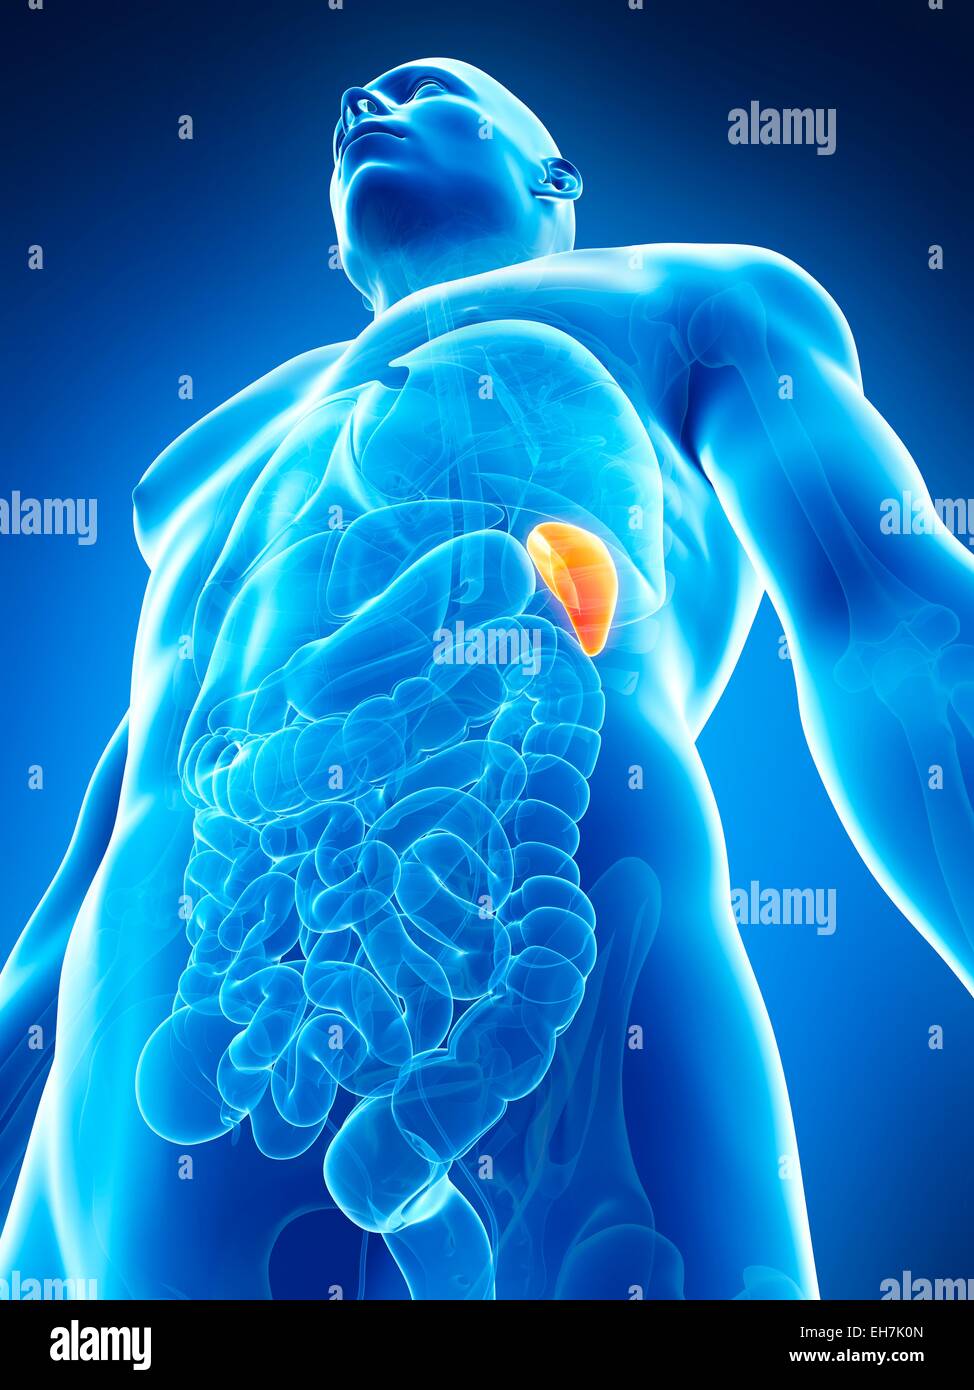 Human spleen, illustration Stock Photo - Alamy